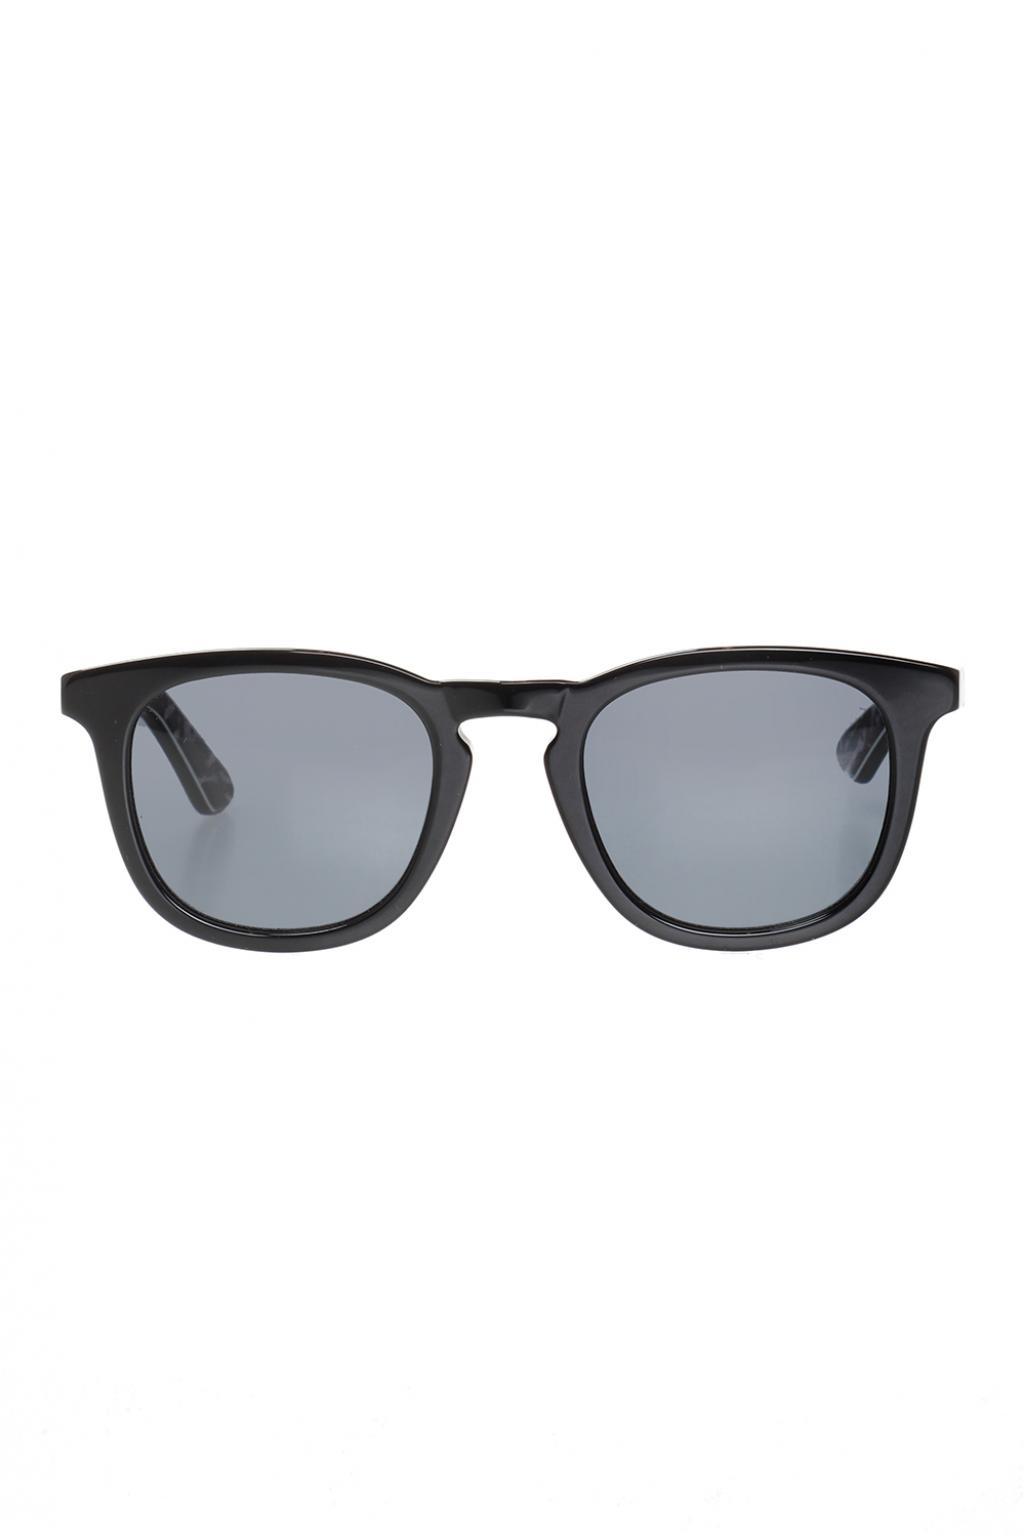 Jimmy Choo 'ben' Sunglasses for Men - Lyst